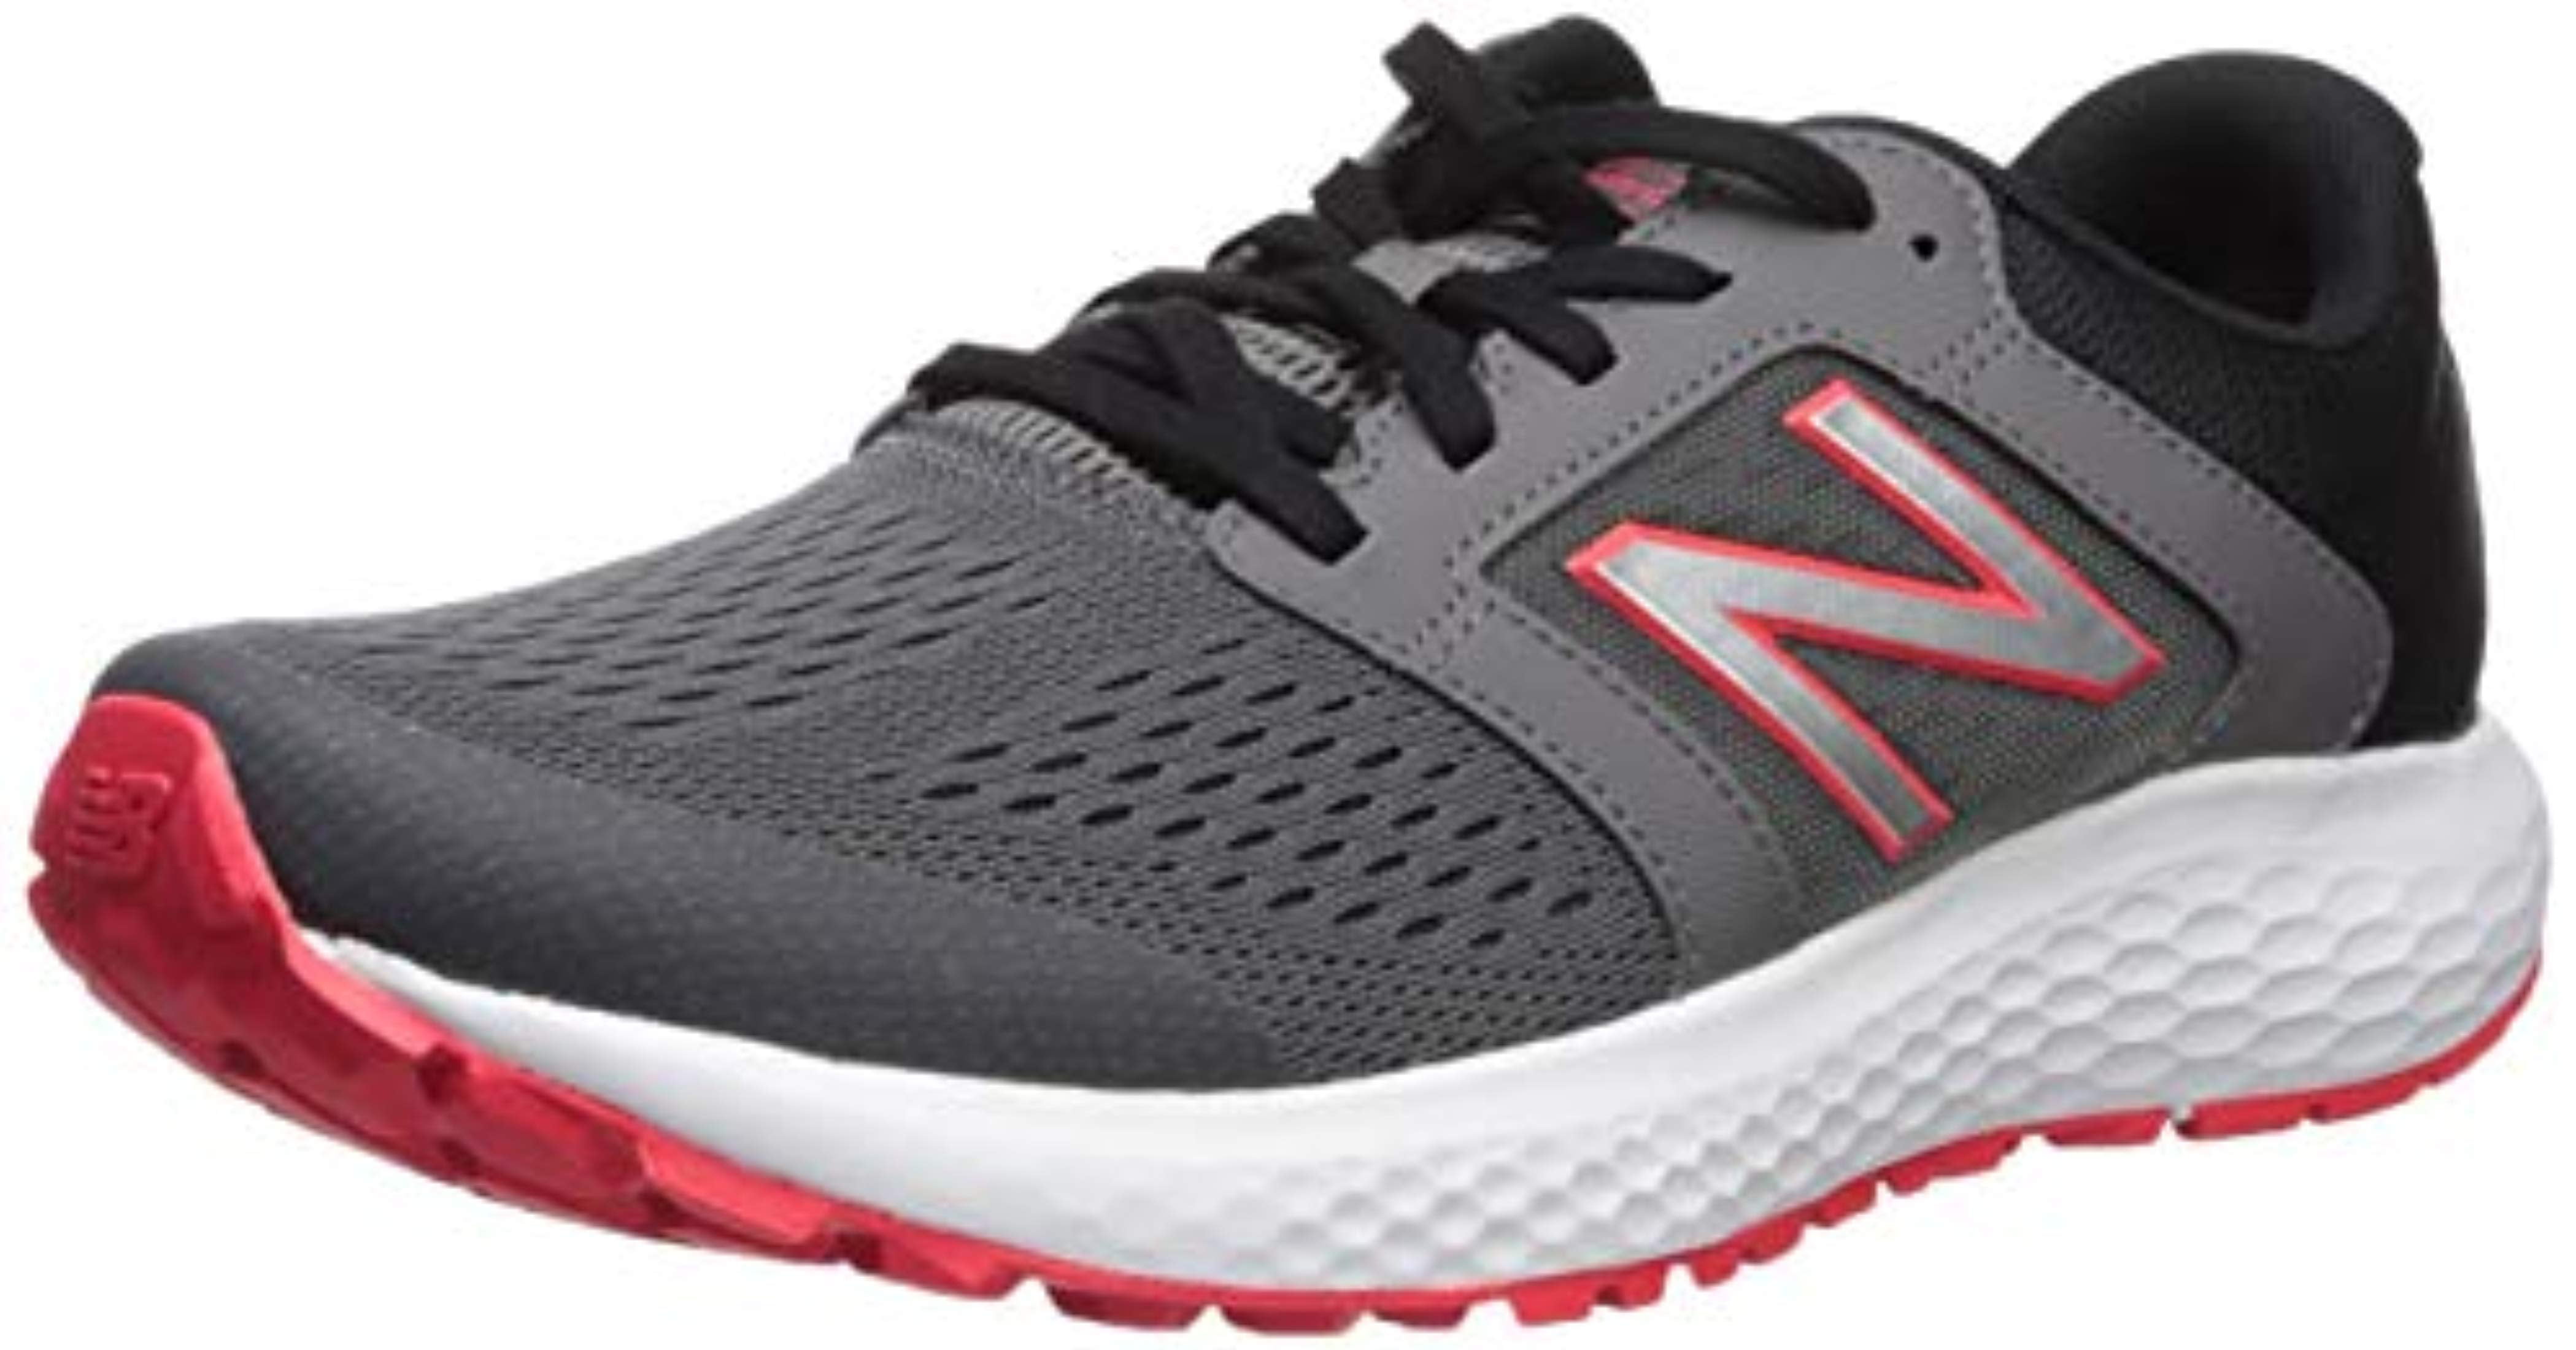 new balance men's 520v5 running shoes